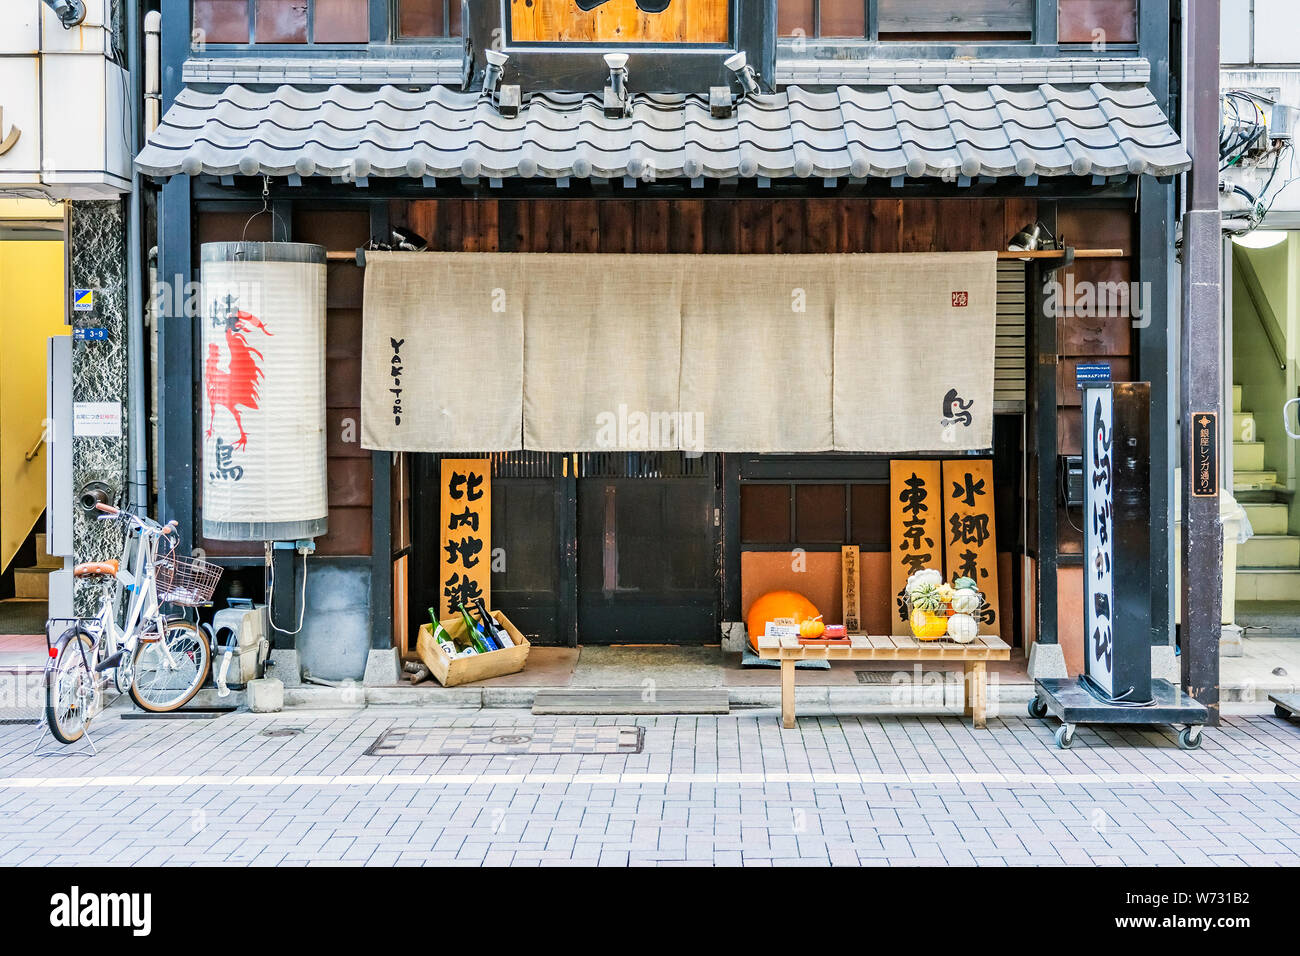 Tokio, Japan - OKTOBER 6, 2018. Der Haupteingang der japanischen Restaurant. Traditionelle hölzerne Fassade des Food Store in Japan. Stockfoto